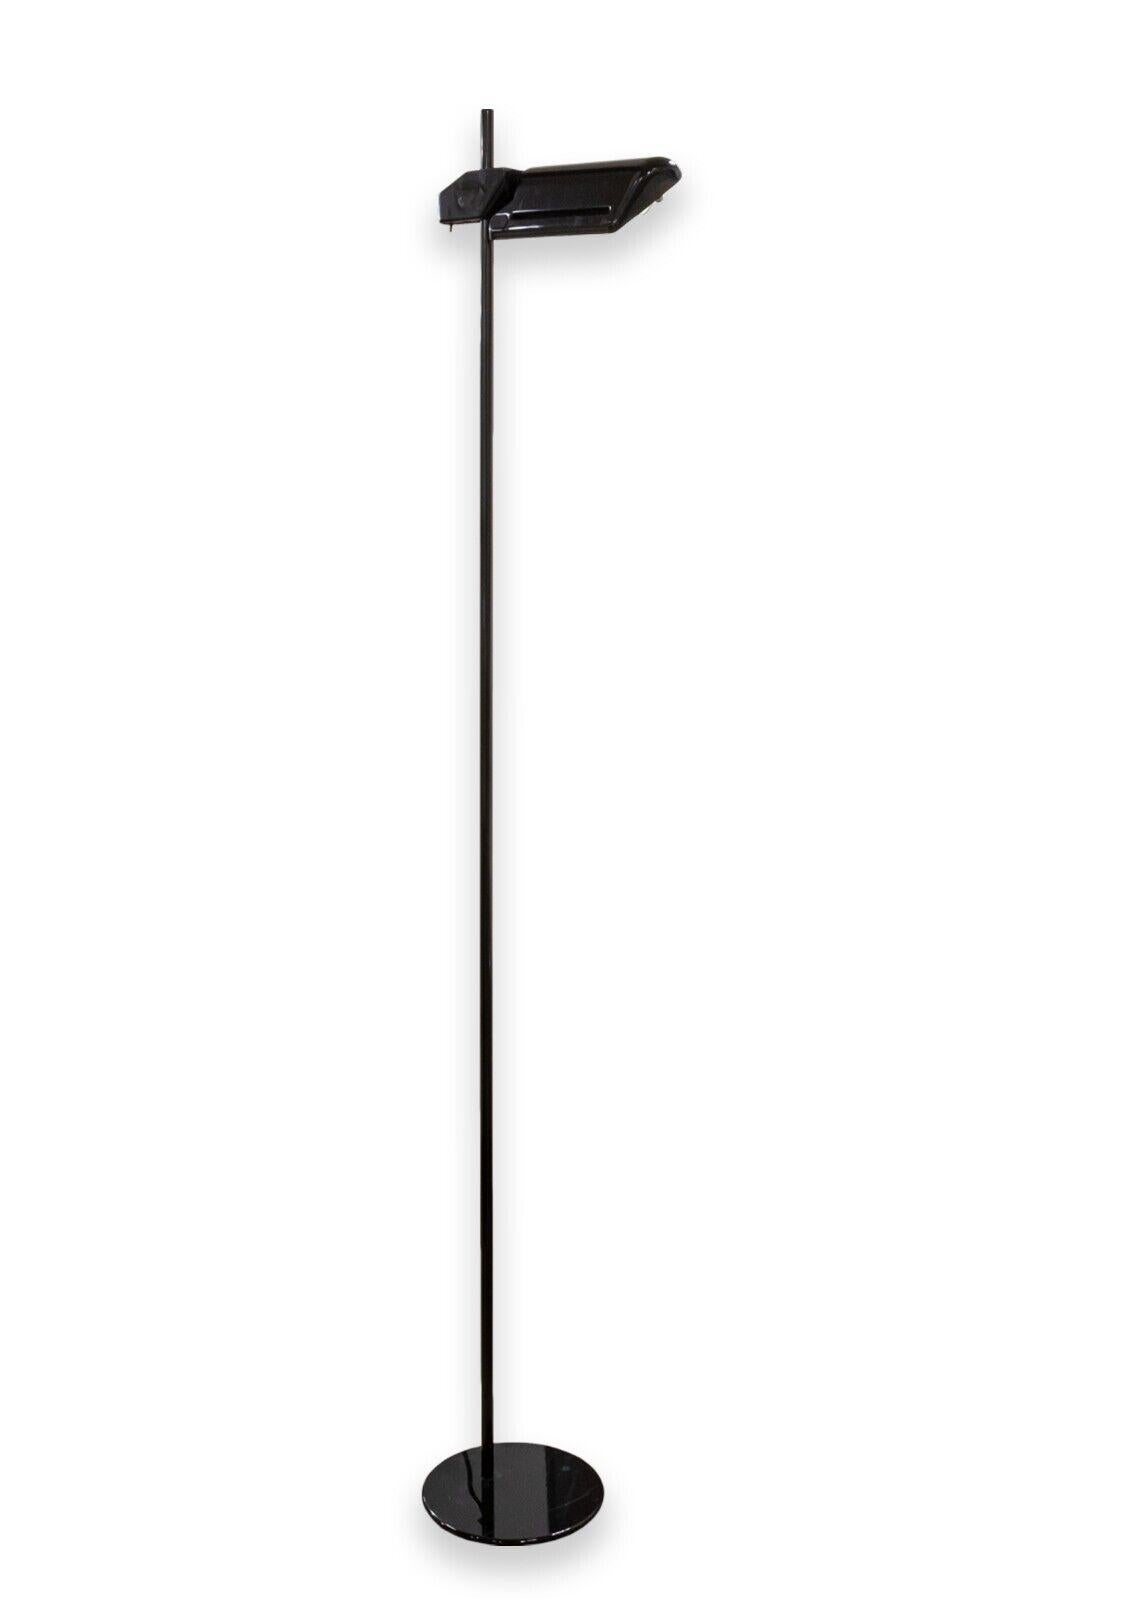 Paire de lampadaires Arteluce BIS A700. Ensemble de lampadaires italiens modernes. Ces lampadaires hauts sont dotés d'une finition noire brillante, d'une base circulaire lestée et d'une tête réglable fixée au grand mât central. L'interrupteur de ces